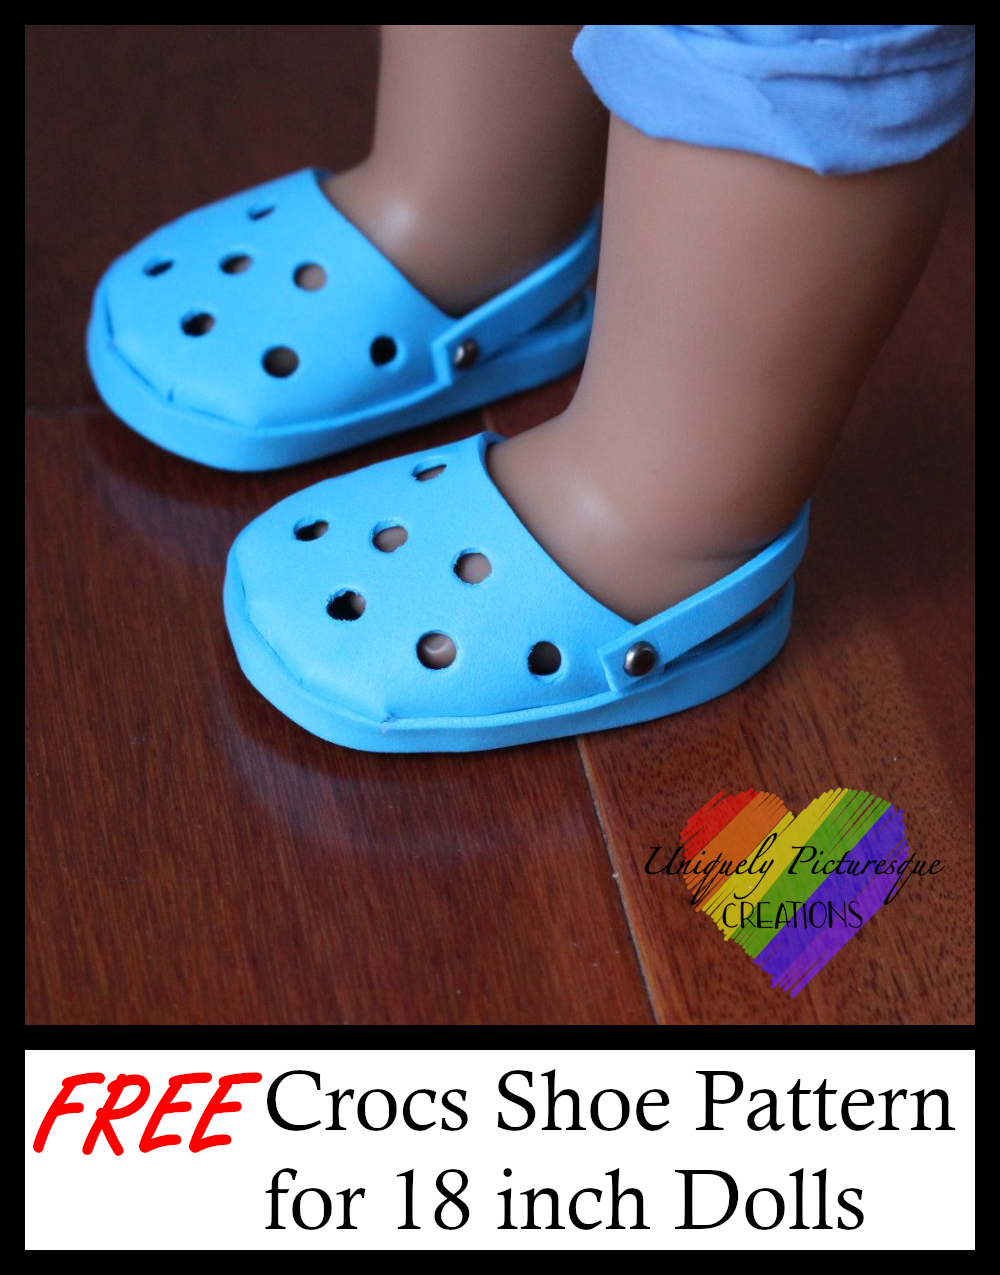 foam creations crocs